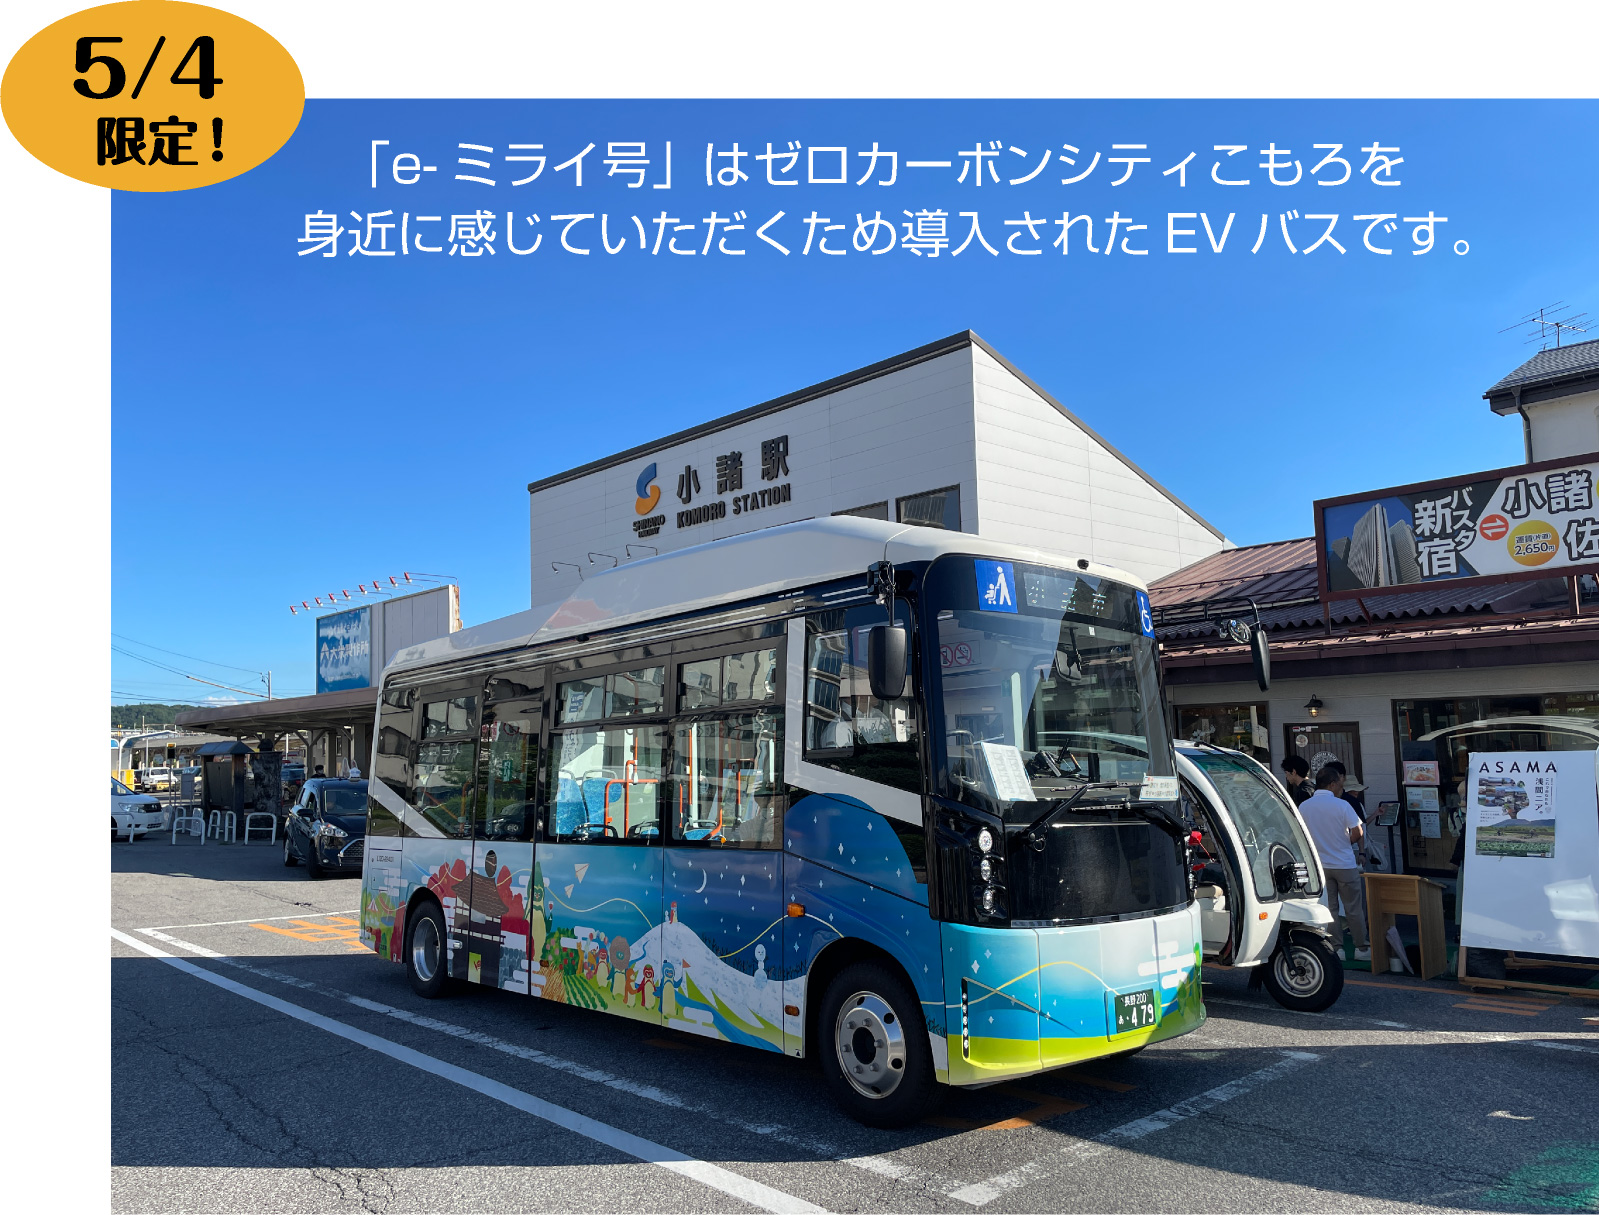 「e-ミライ号」はゼロカーボンシティこもろを身近に感じていただくため導入されたEVバスです。